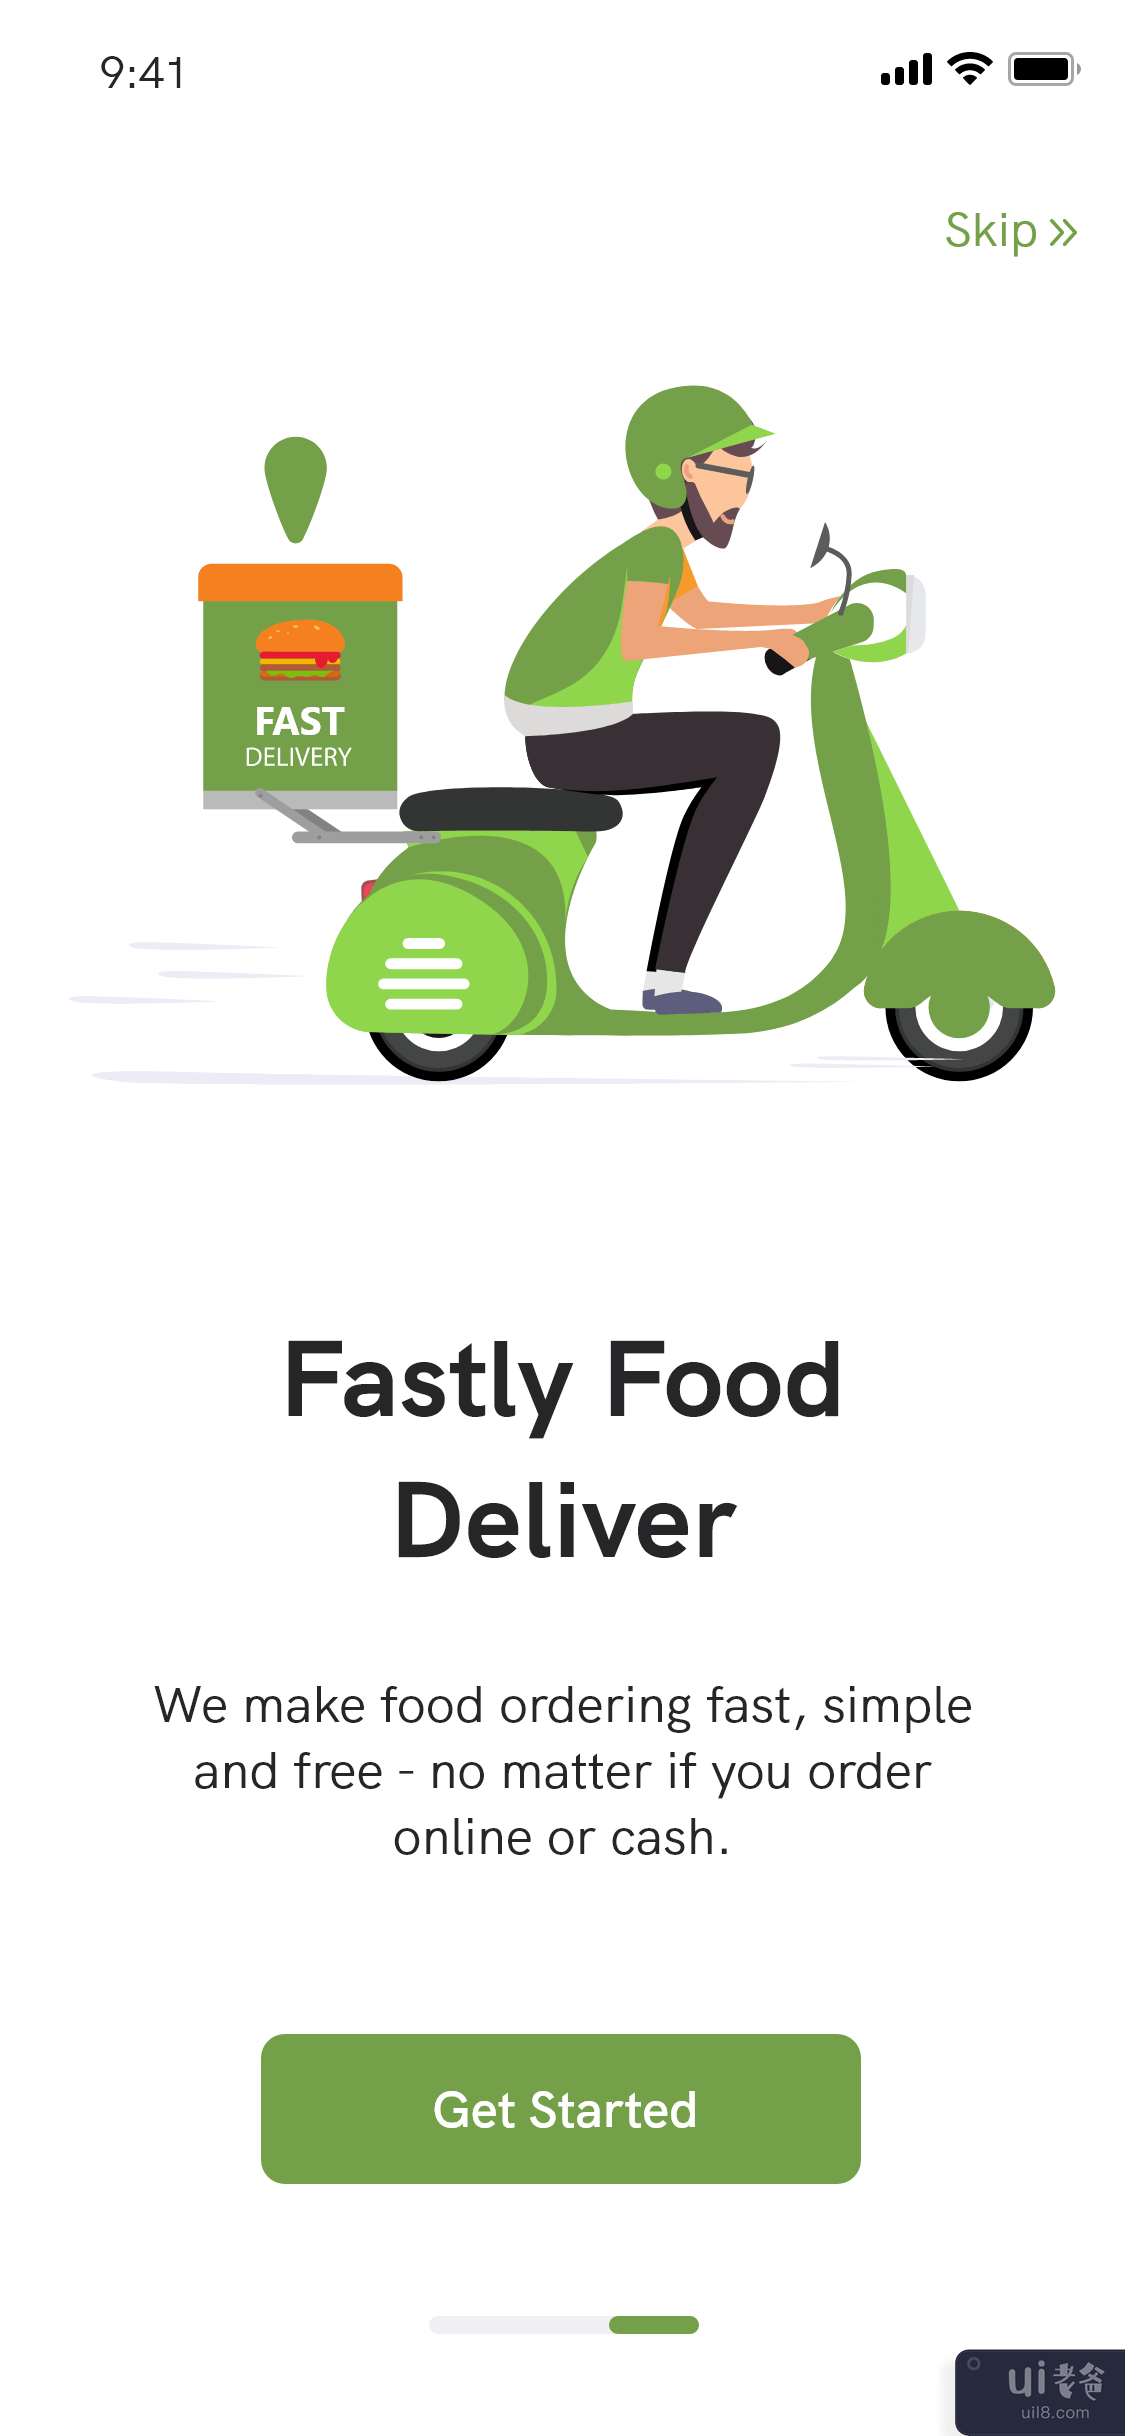 送餐应用程序 - 餐厅查找器应用程序(Food Delivery app - Restaurant Finder App)插图1